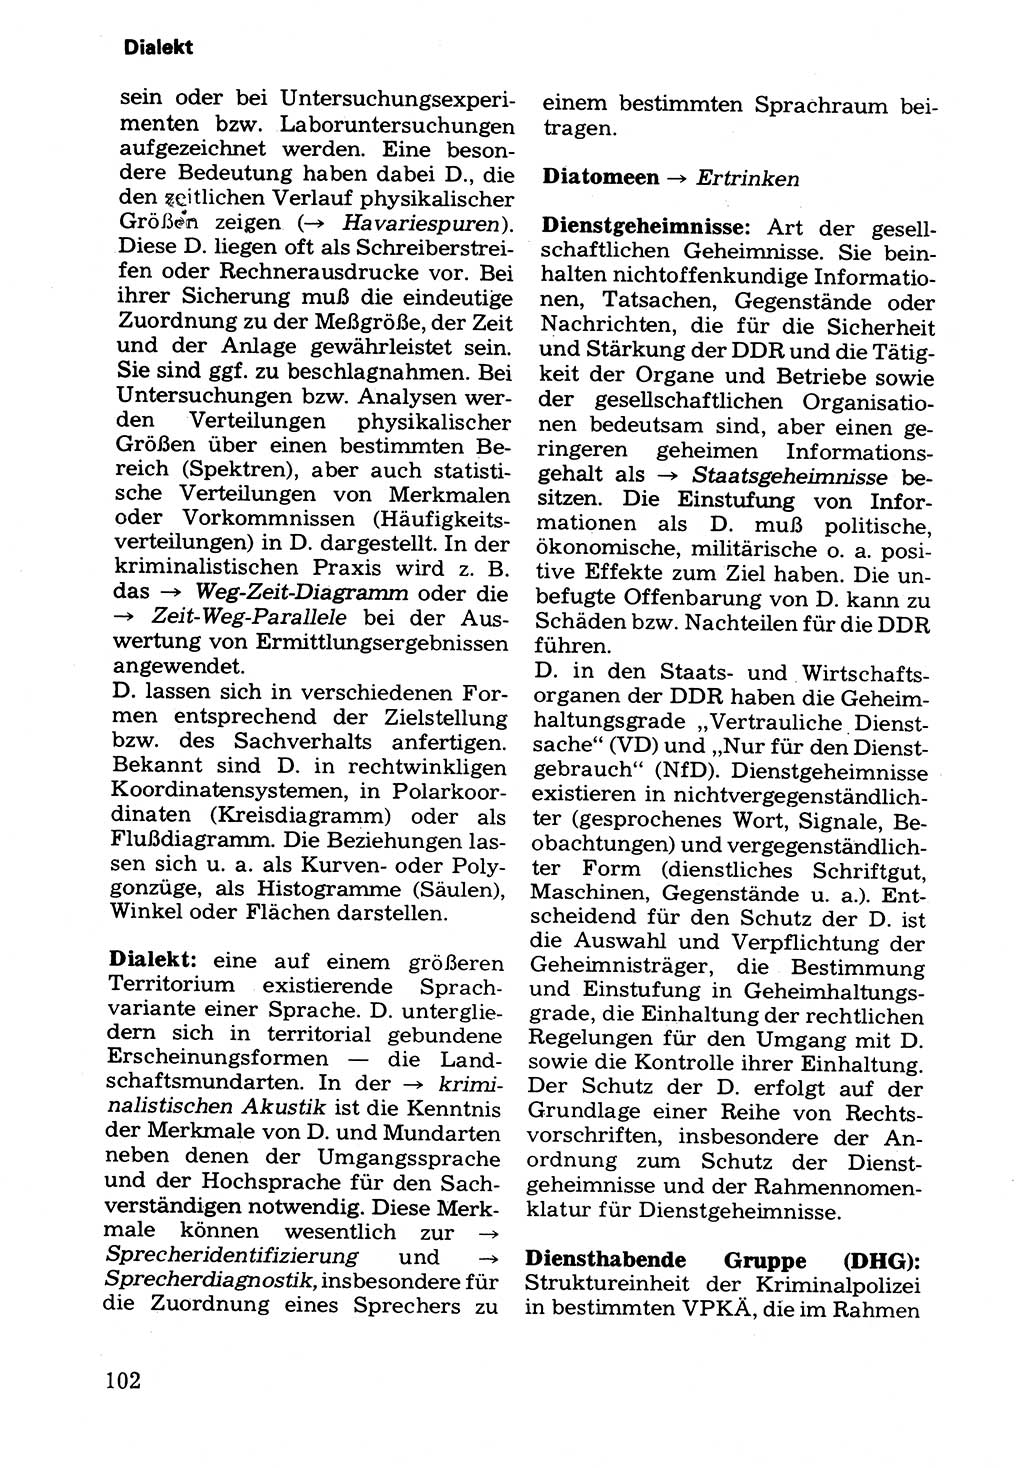 Wörterbuch der sozialistischen Kriminalistik [Deutsche Demokratische Republik (DDR)] 1981, Seite 102 (Wb. soz. Krim. DDR 1981, S. 102)